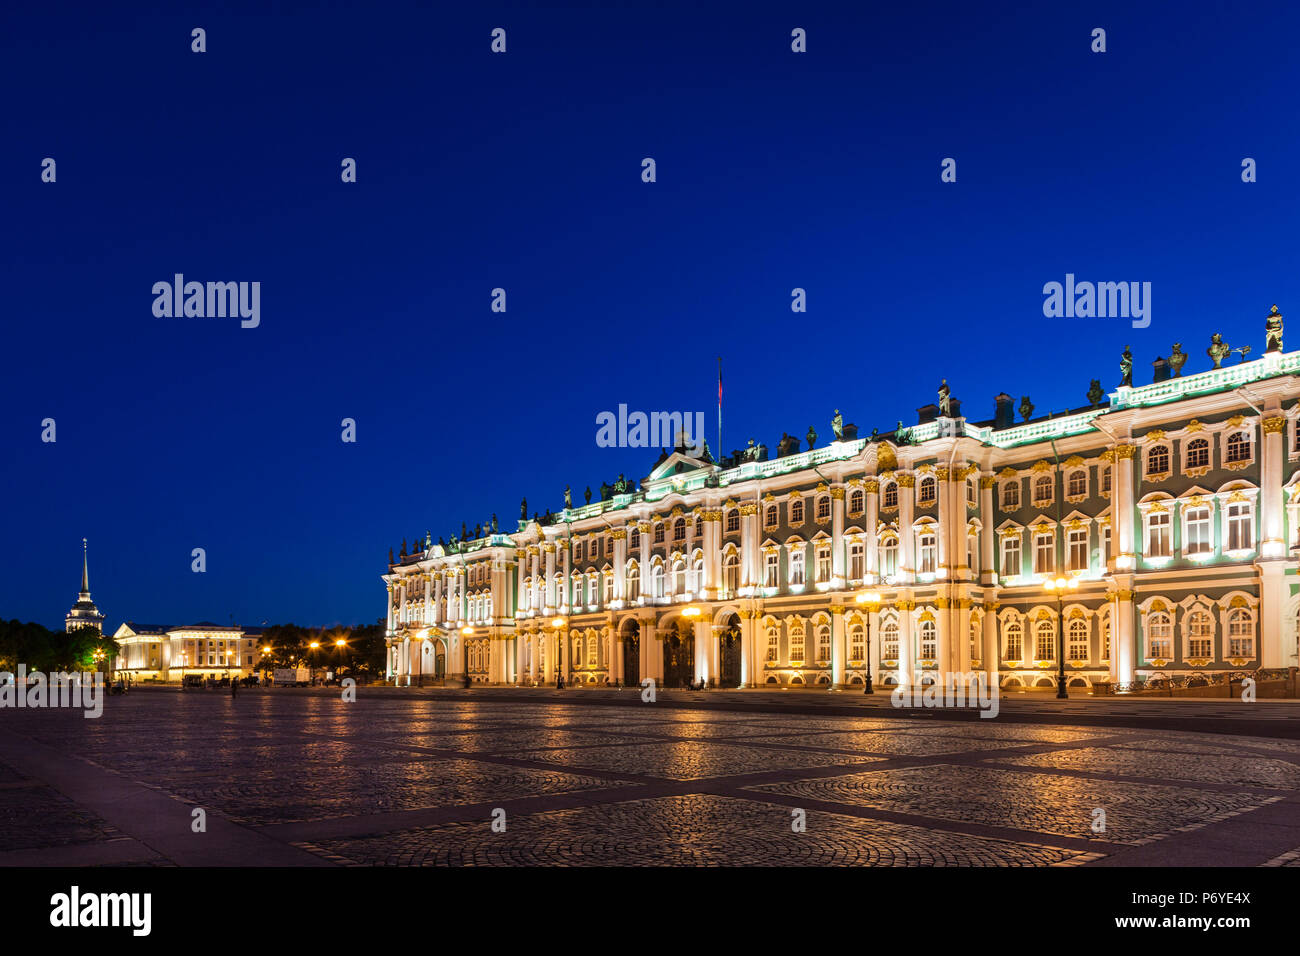 La Russie, Saint-Pétersbourg, Centre, Palais d'hiver, Musée de l'Ermitage, la Place Dvortsovaya, soir Banque D'Images